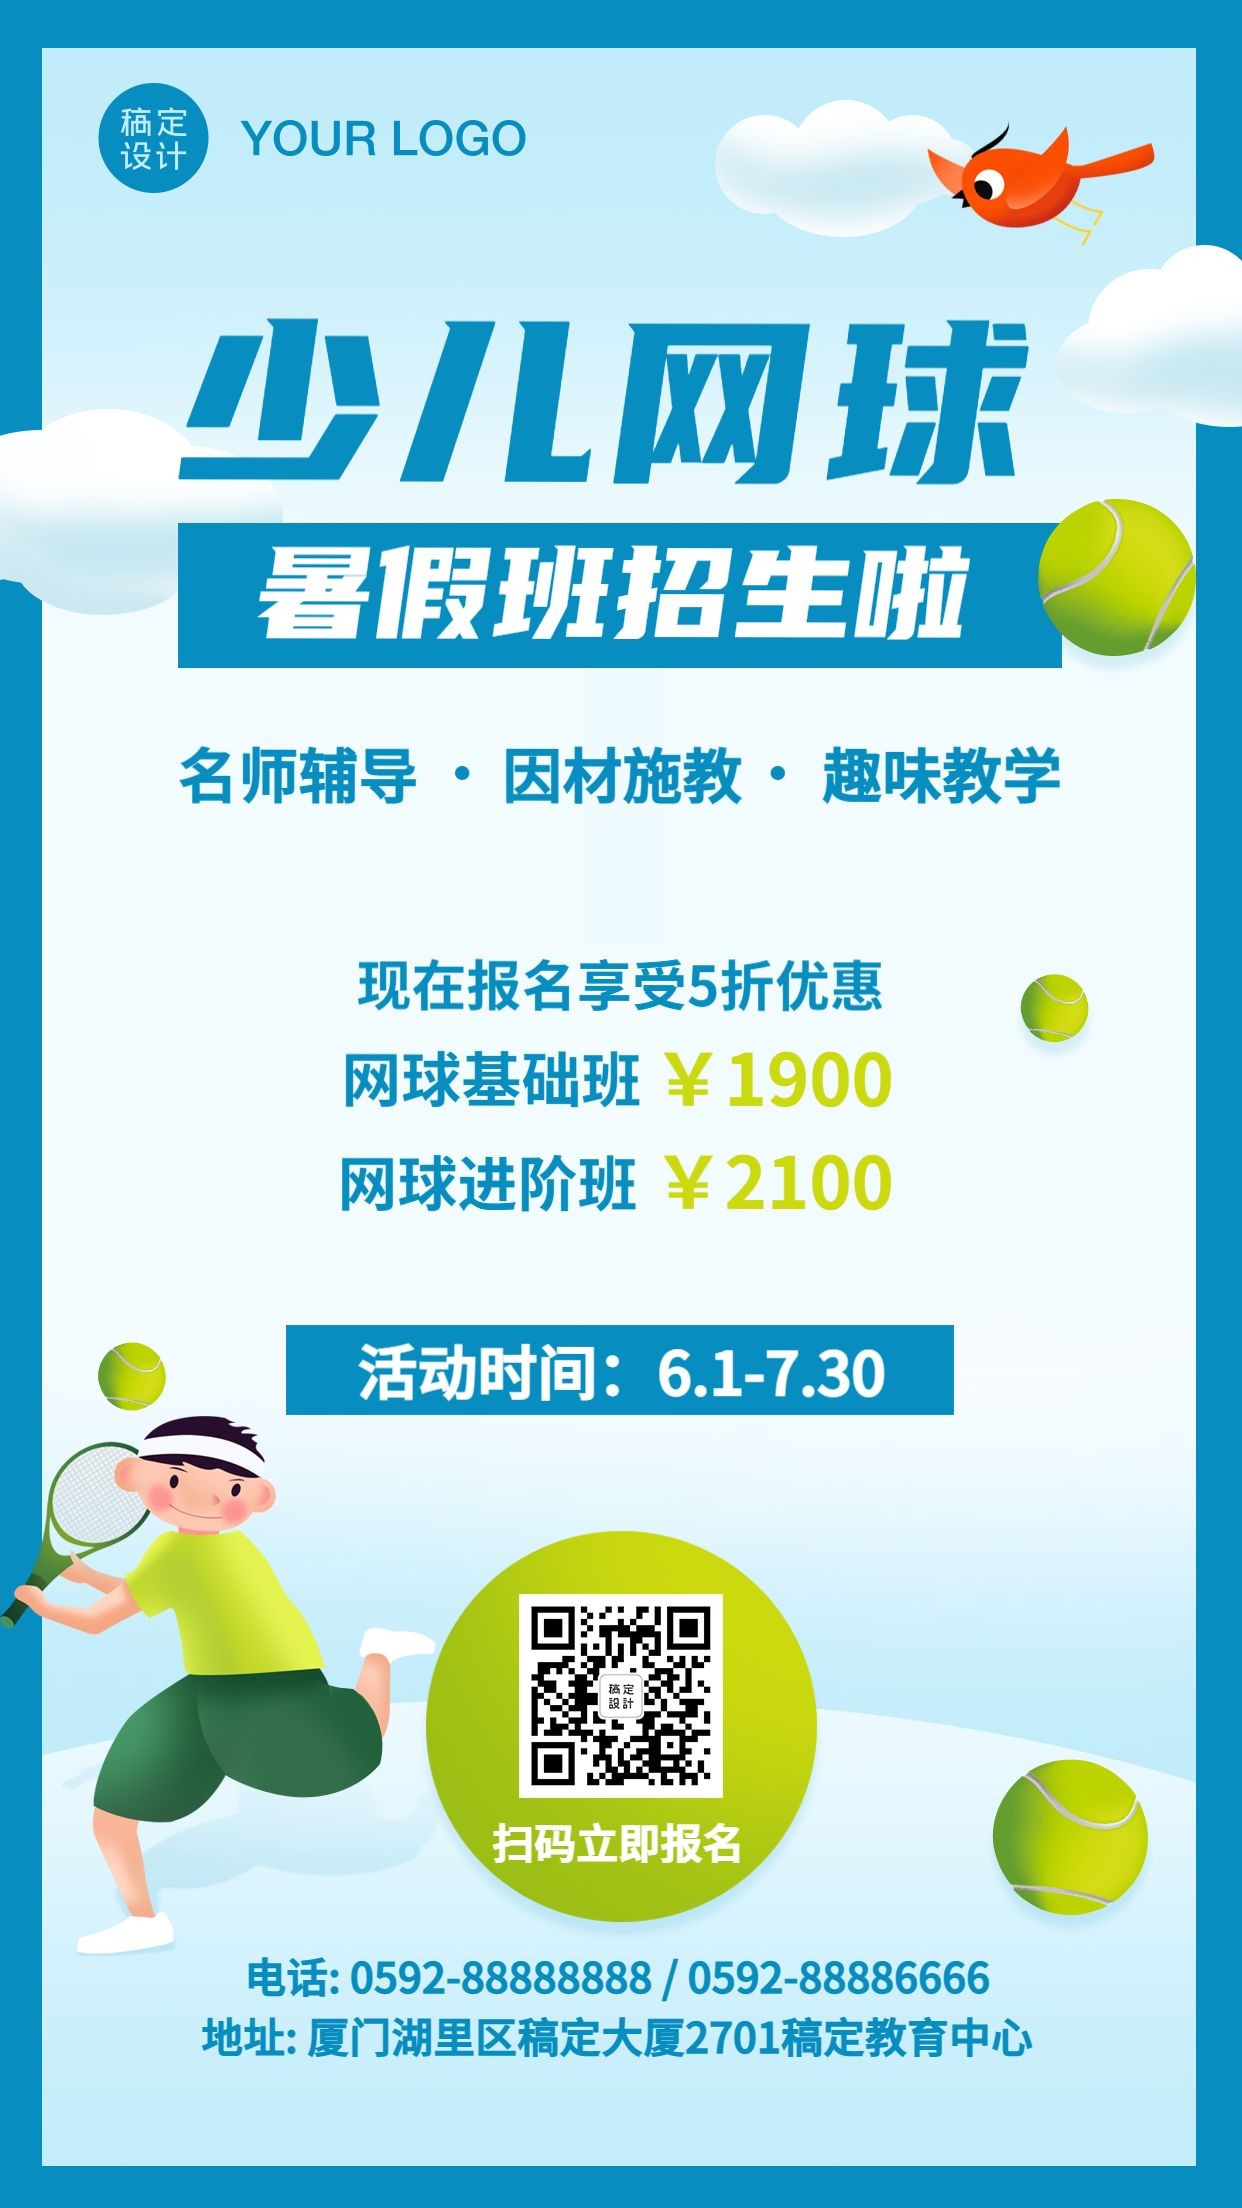 羽毛球网球培训运动暑假招生海报预览效果